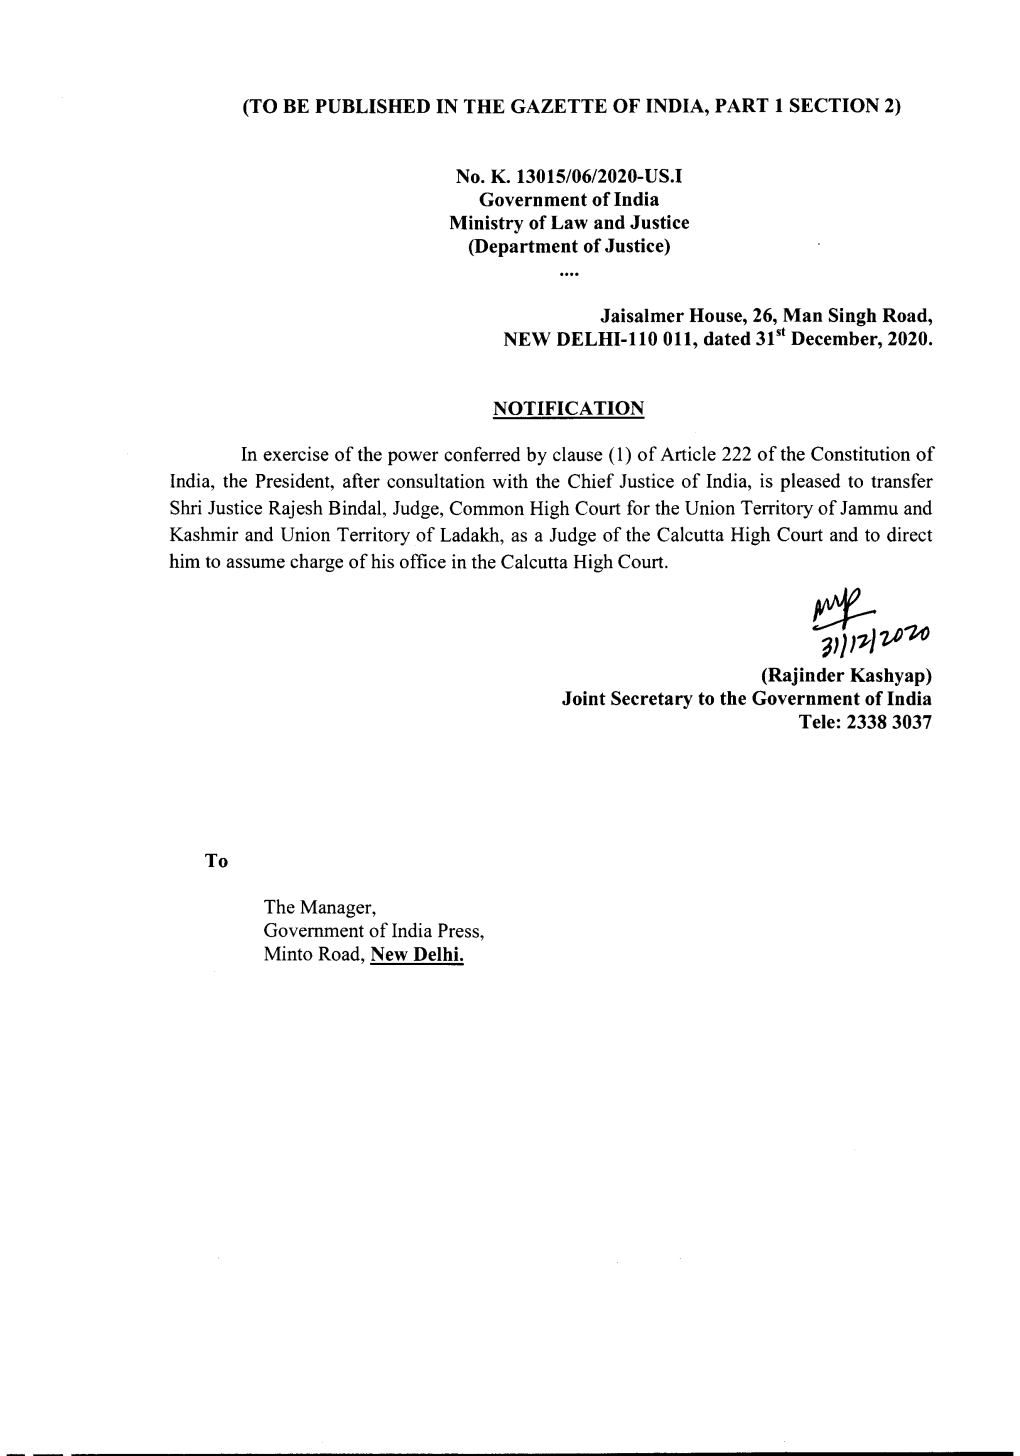 Transfer Orders of Shri Justice Rajesh Bindal